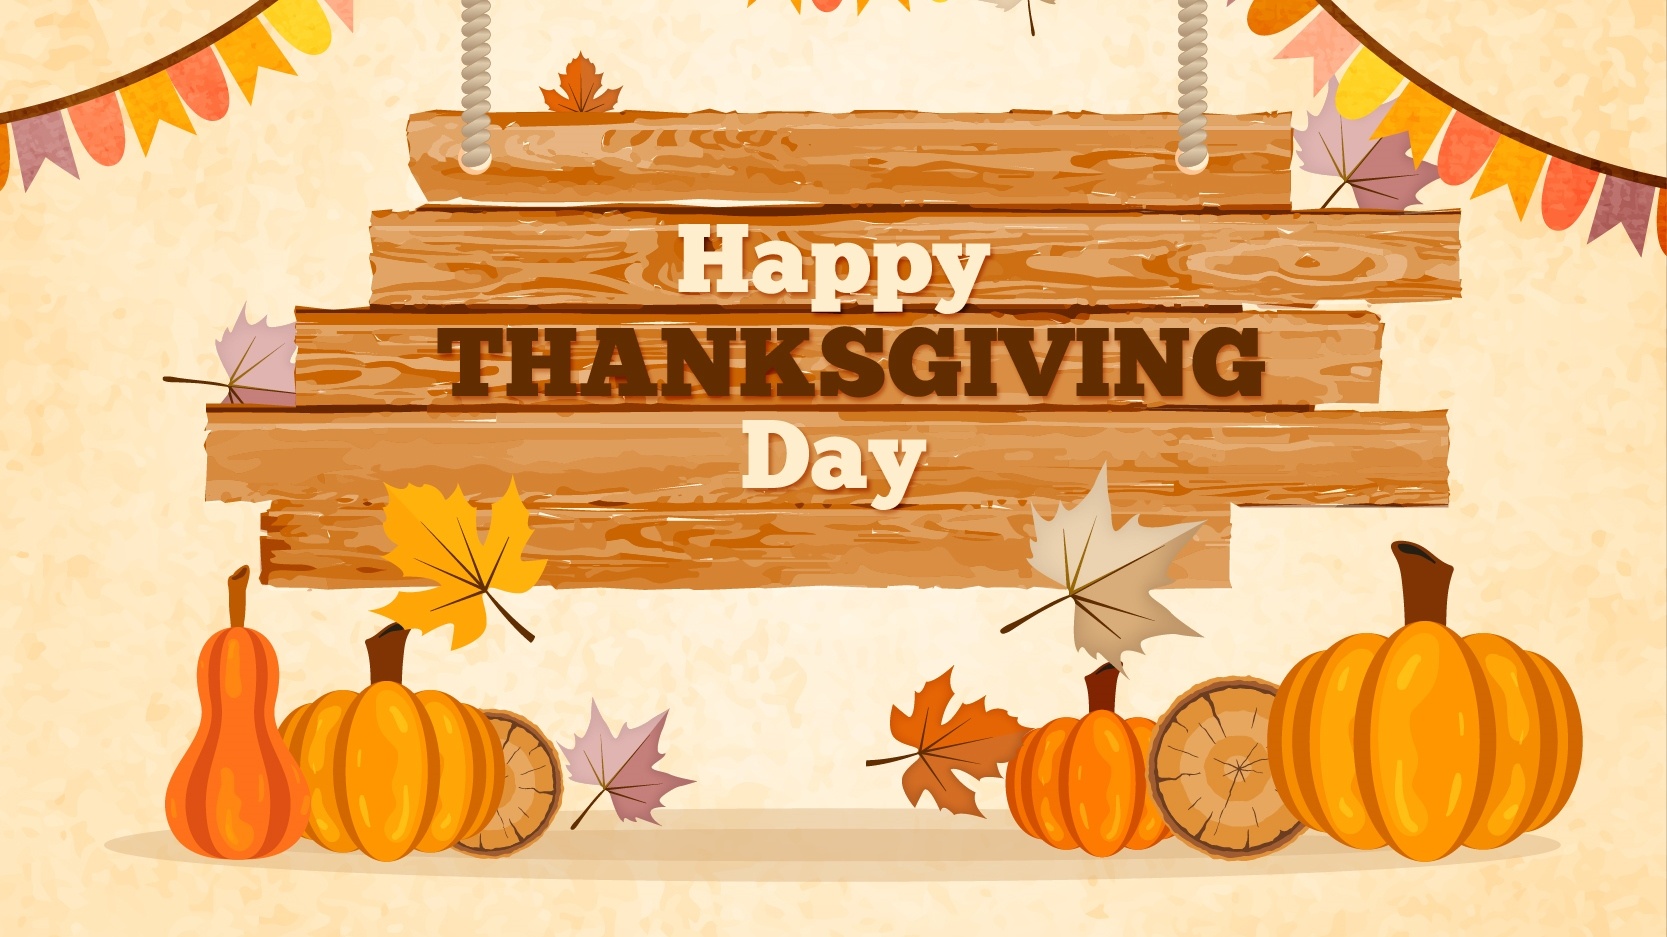 Thanksgiving Day desktop wallpaper free download